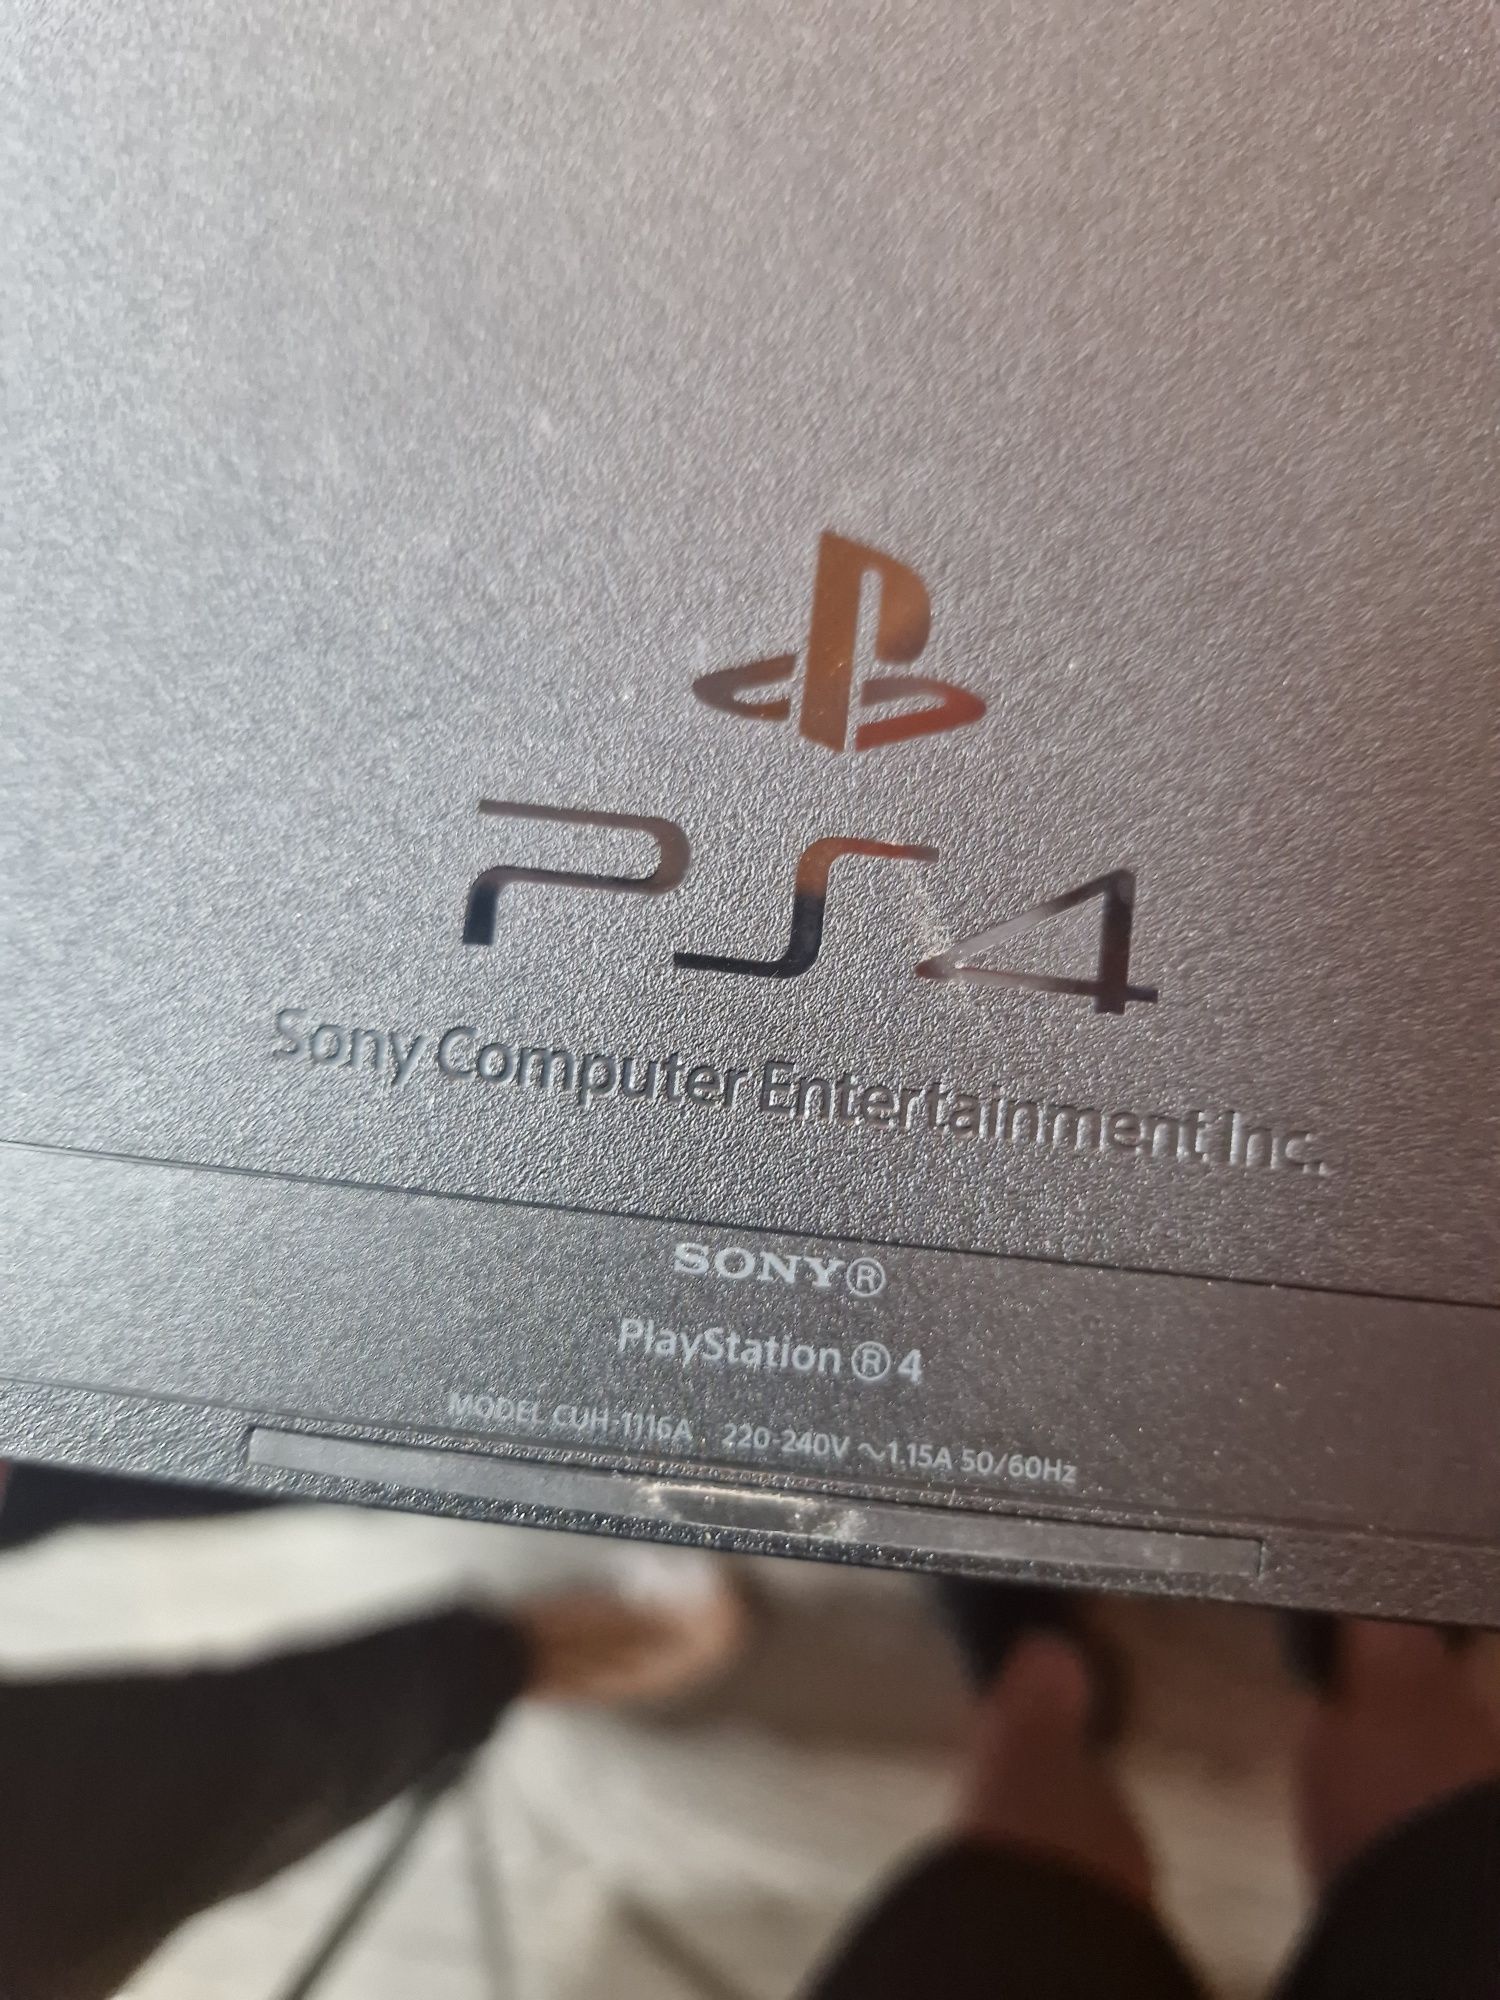 Sony Playstation 4 (cuh-1116a) 500 gb